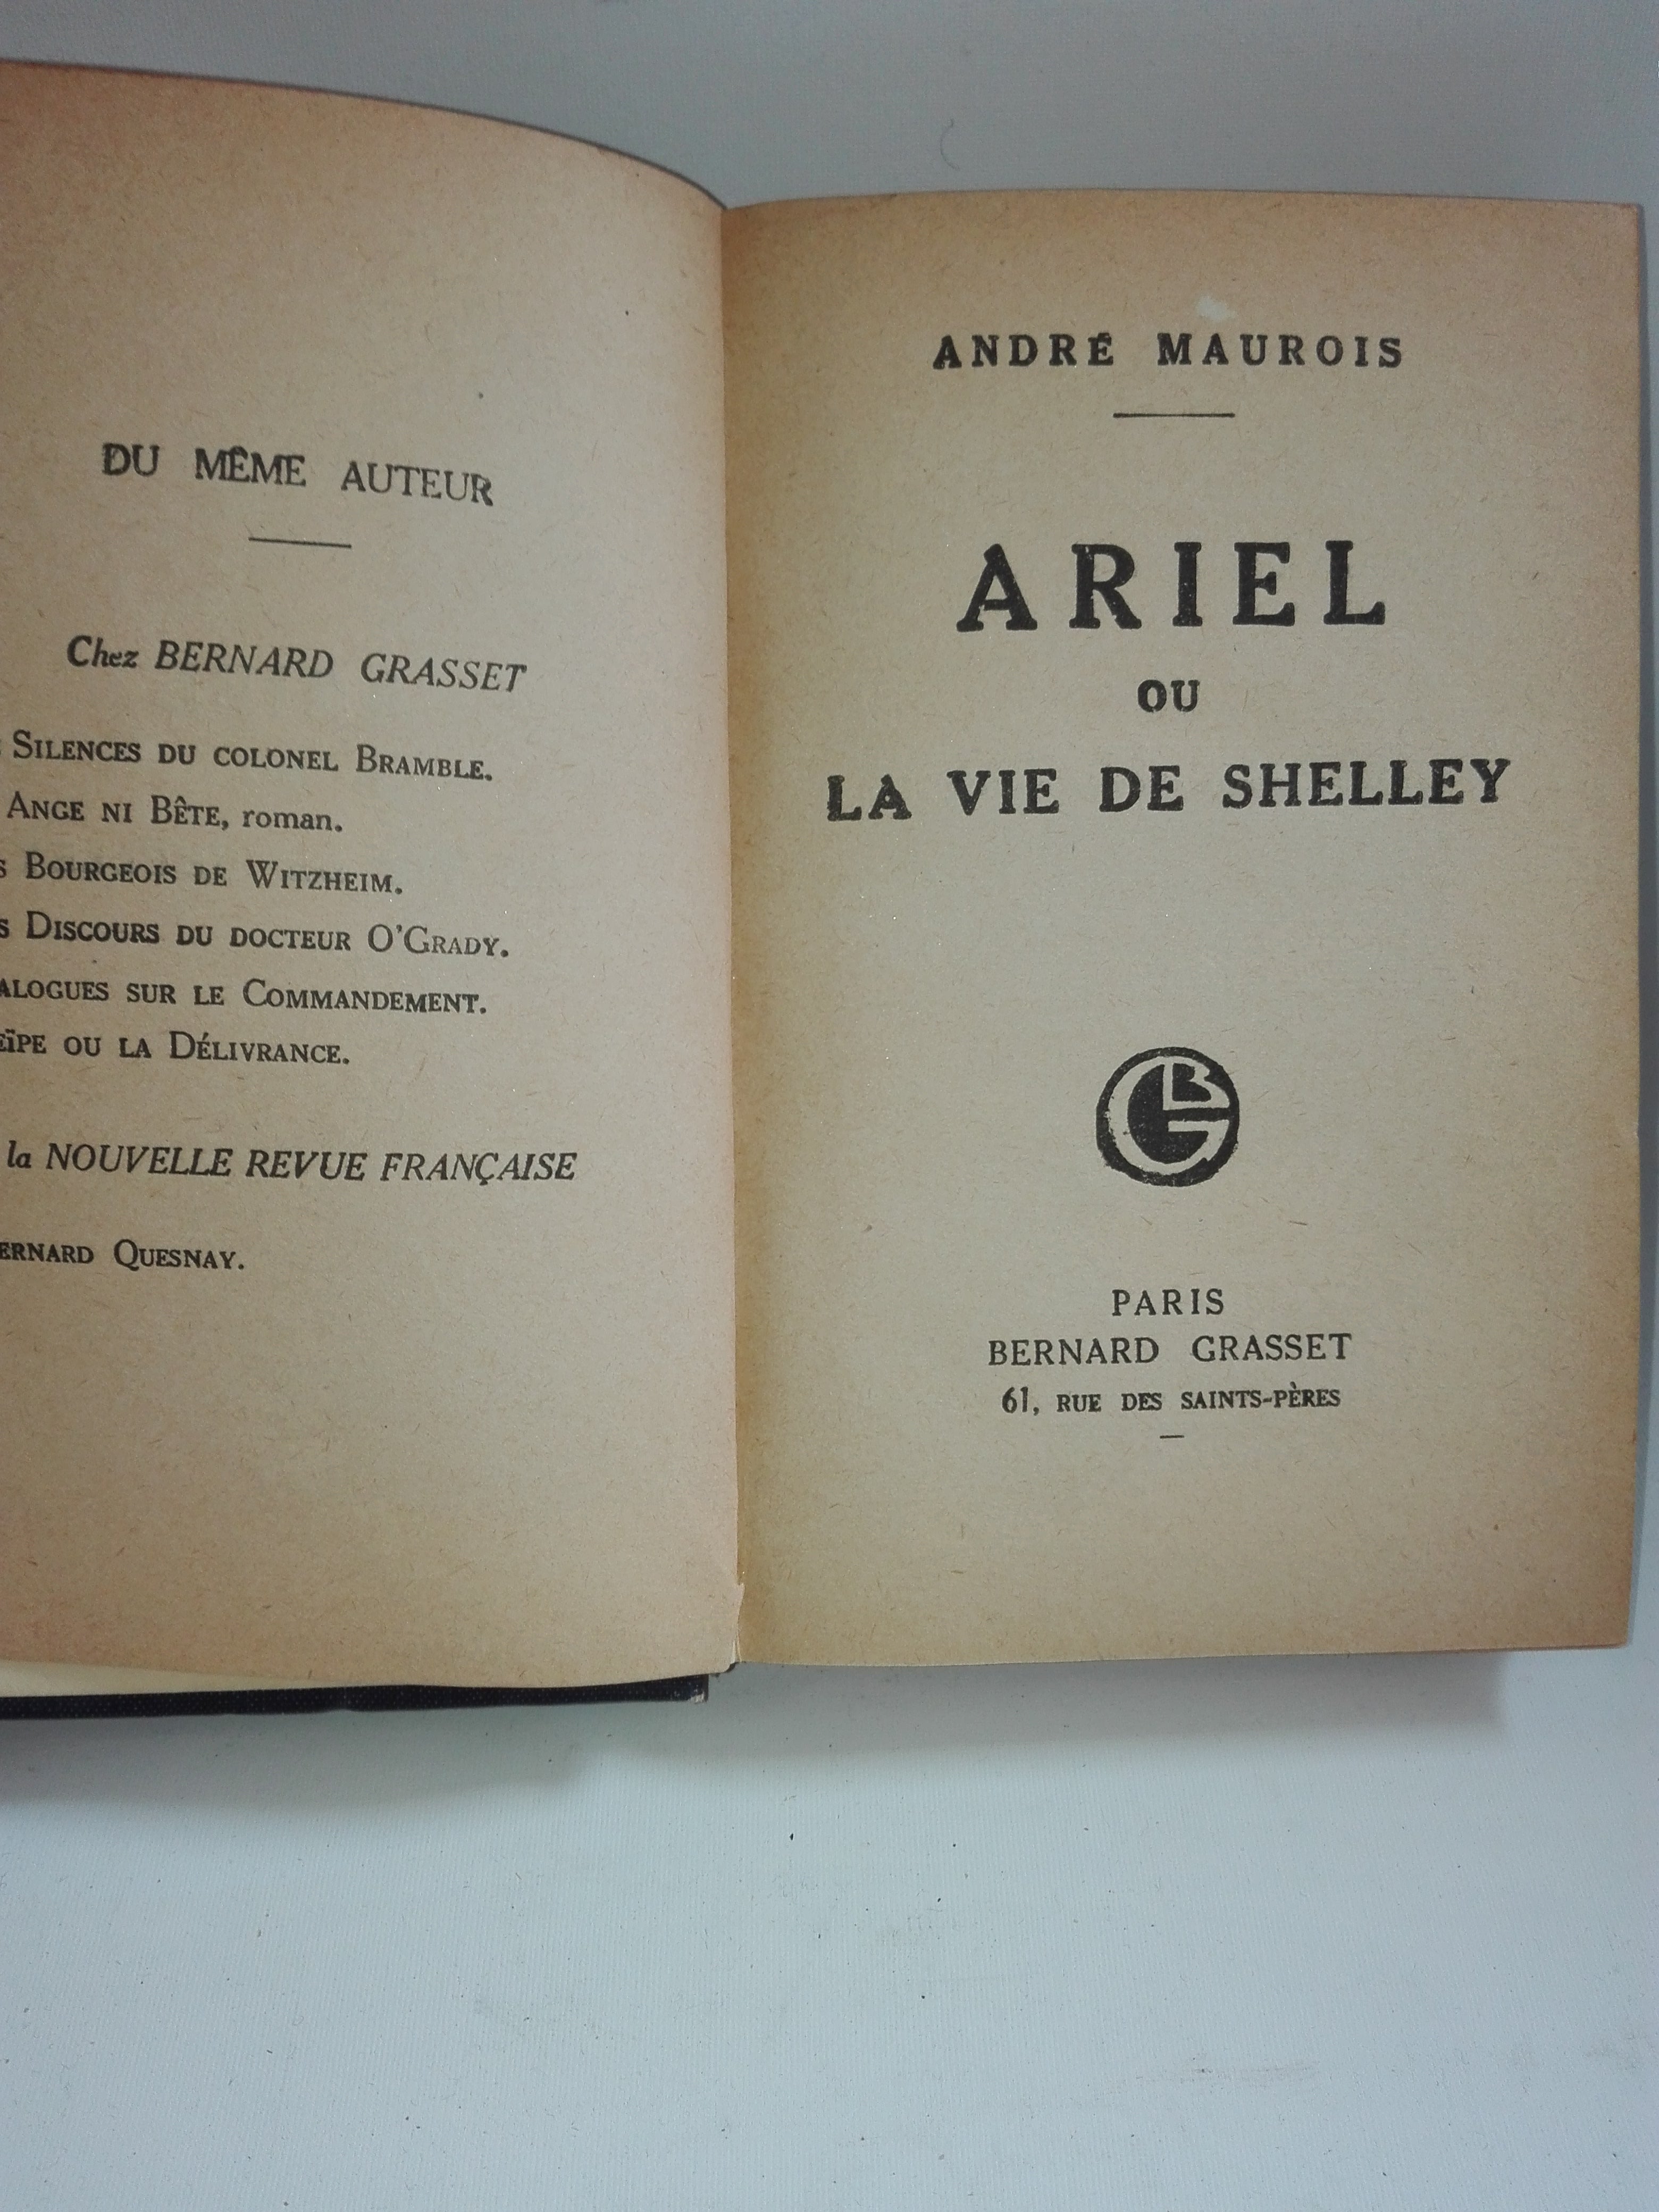 Printre Carti Andre Maurois - Ariel ou la vie de shelley